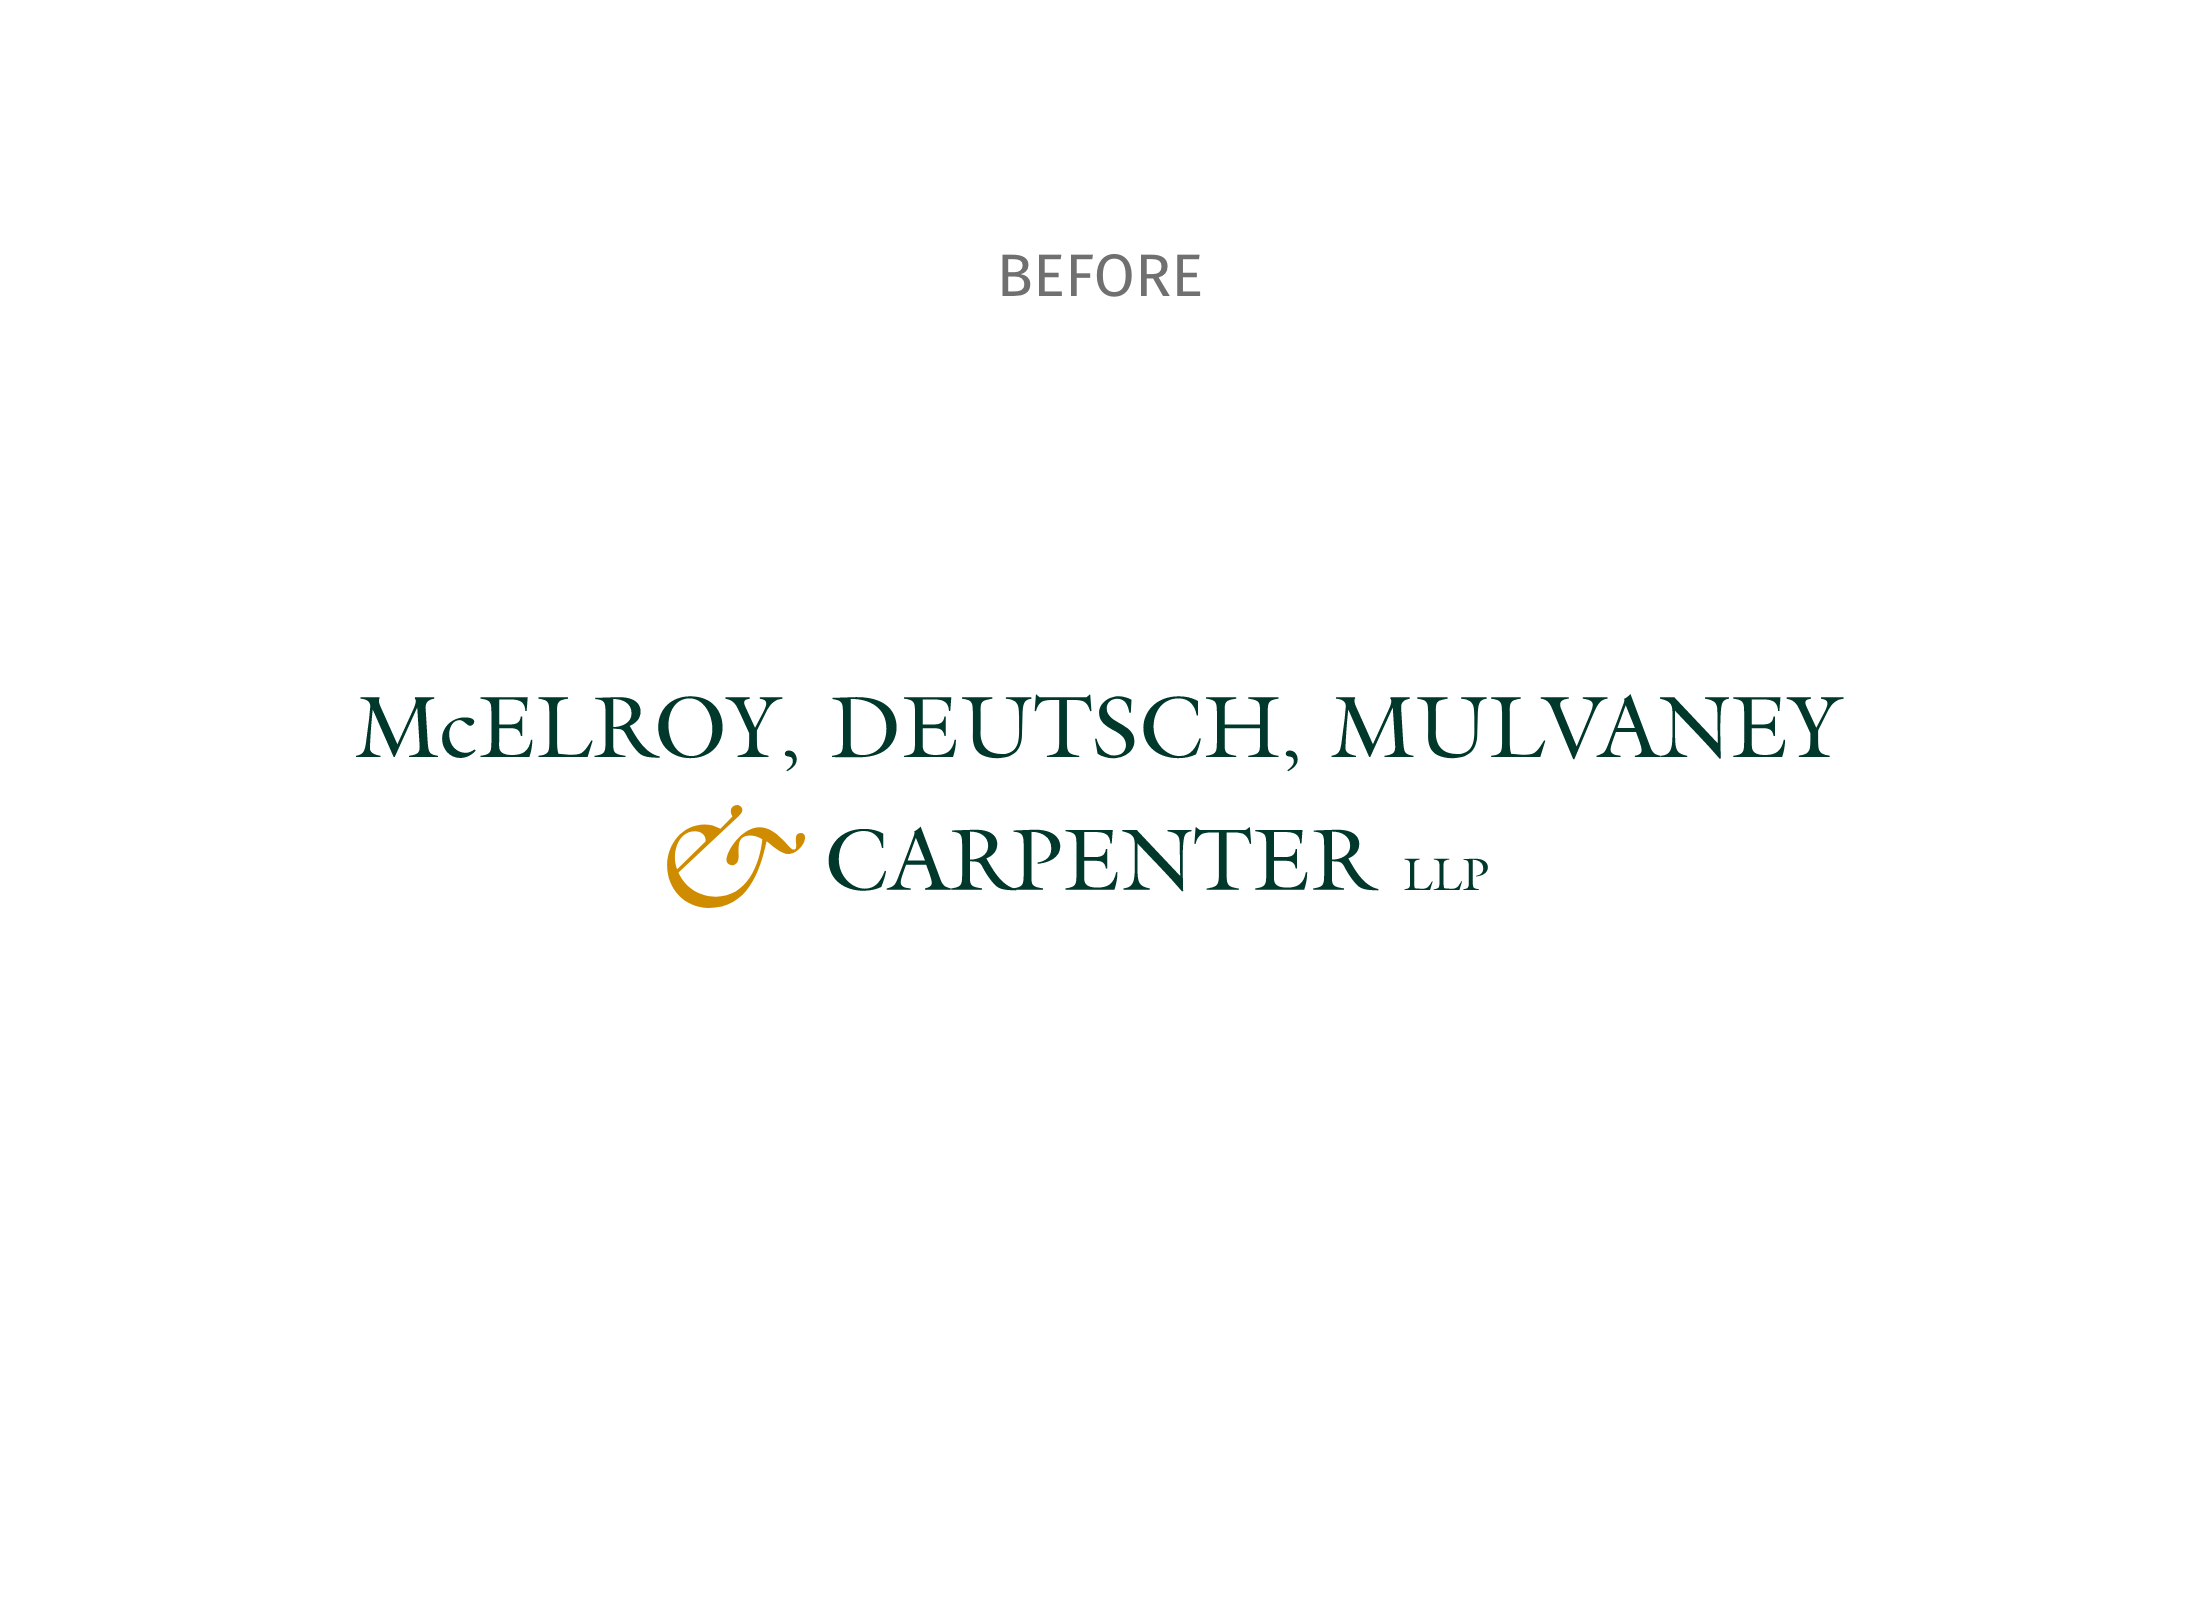 McElroy Deutsch Identity Branding Before